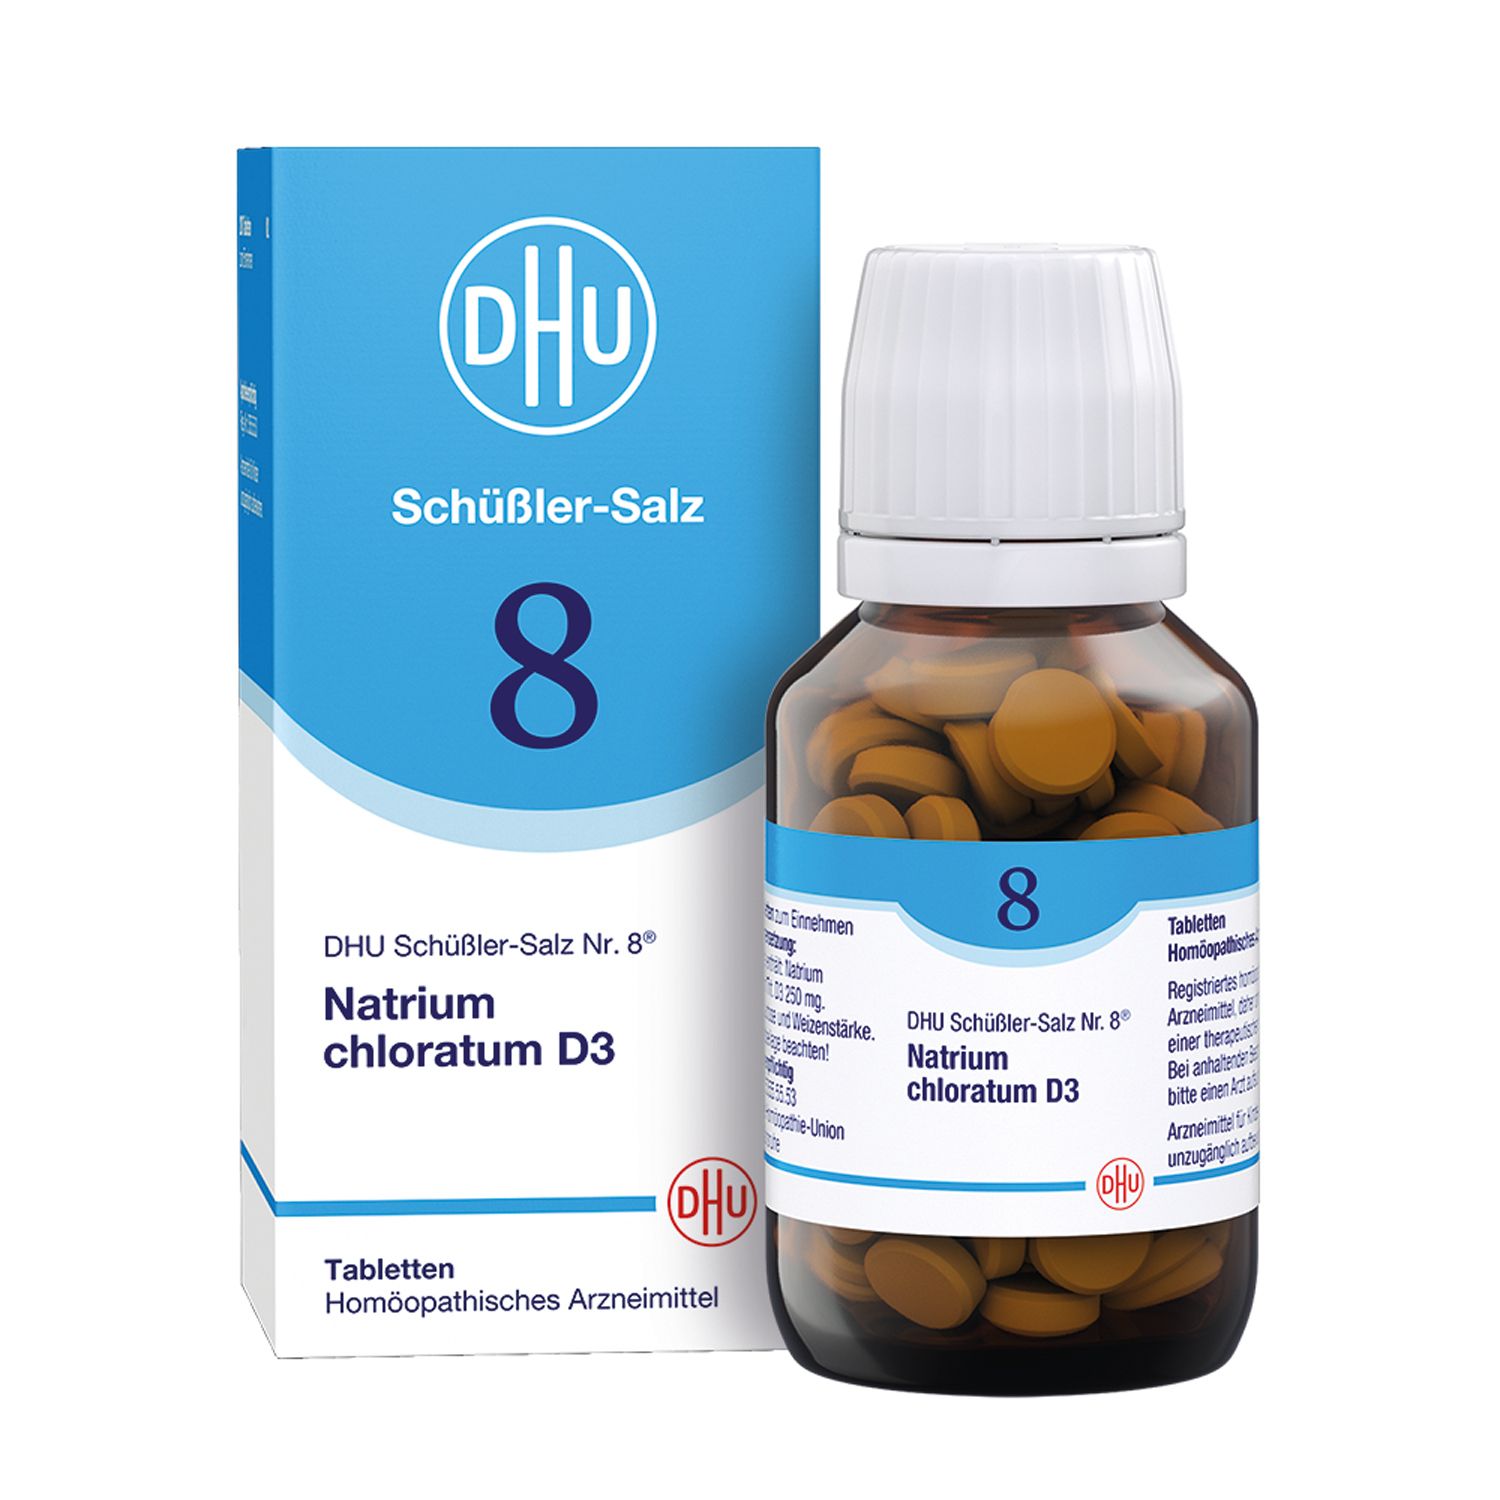 DHU Schüßler-Salz Nr. 8® Natrium chloratum D3